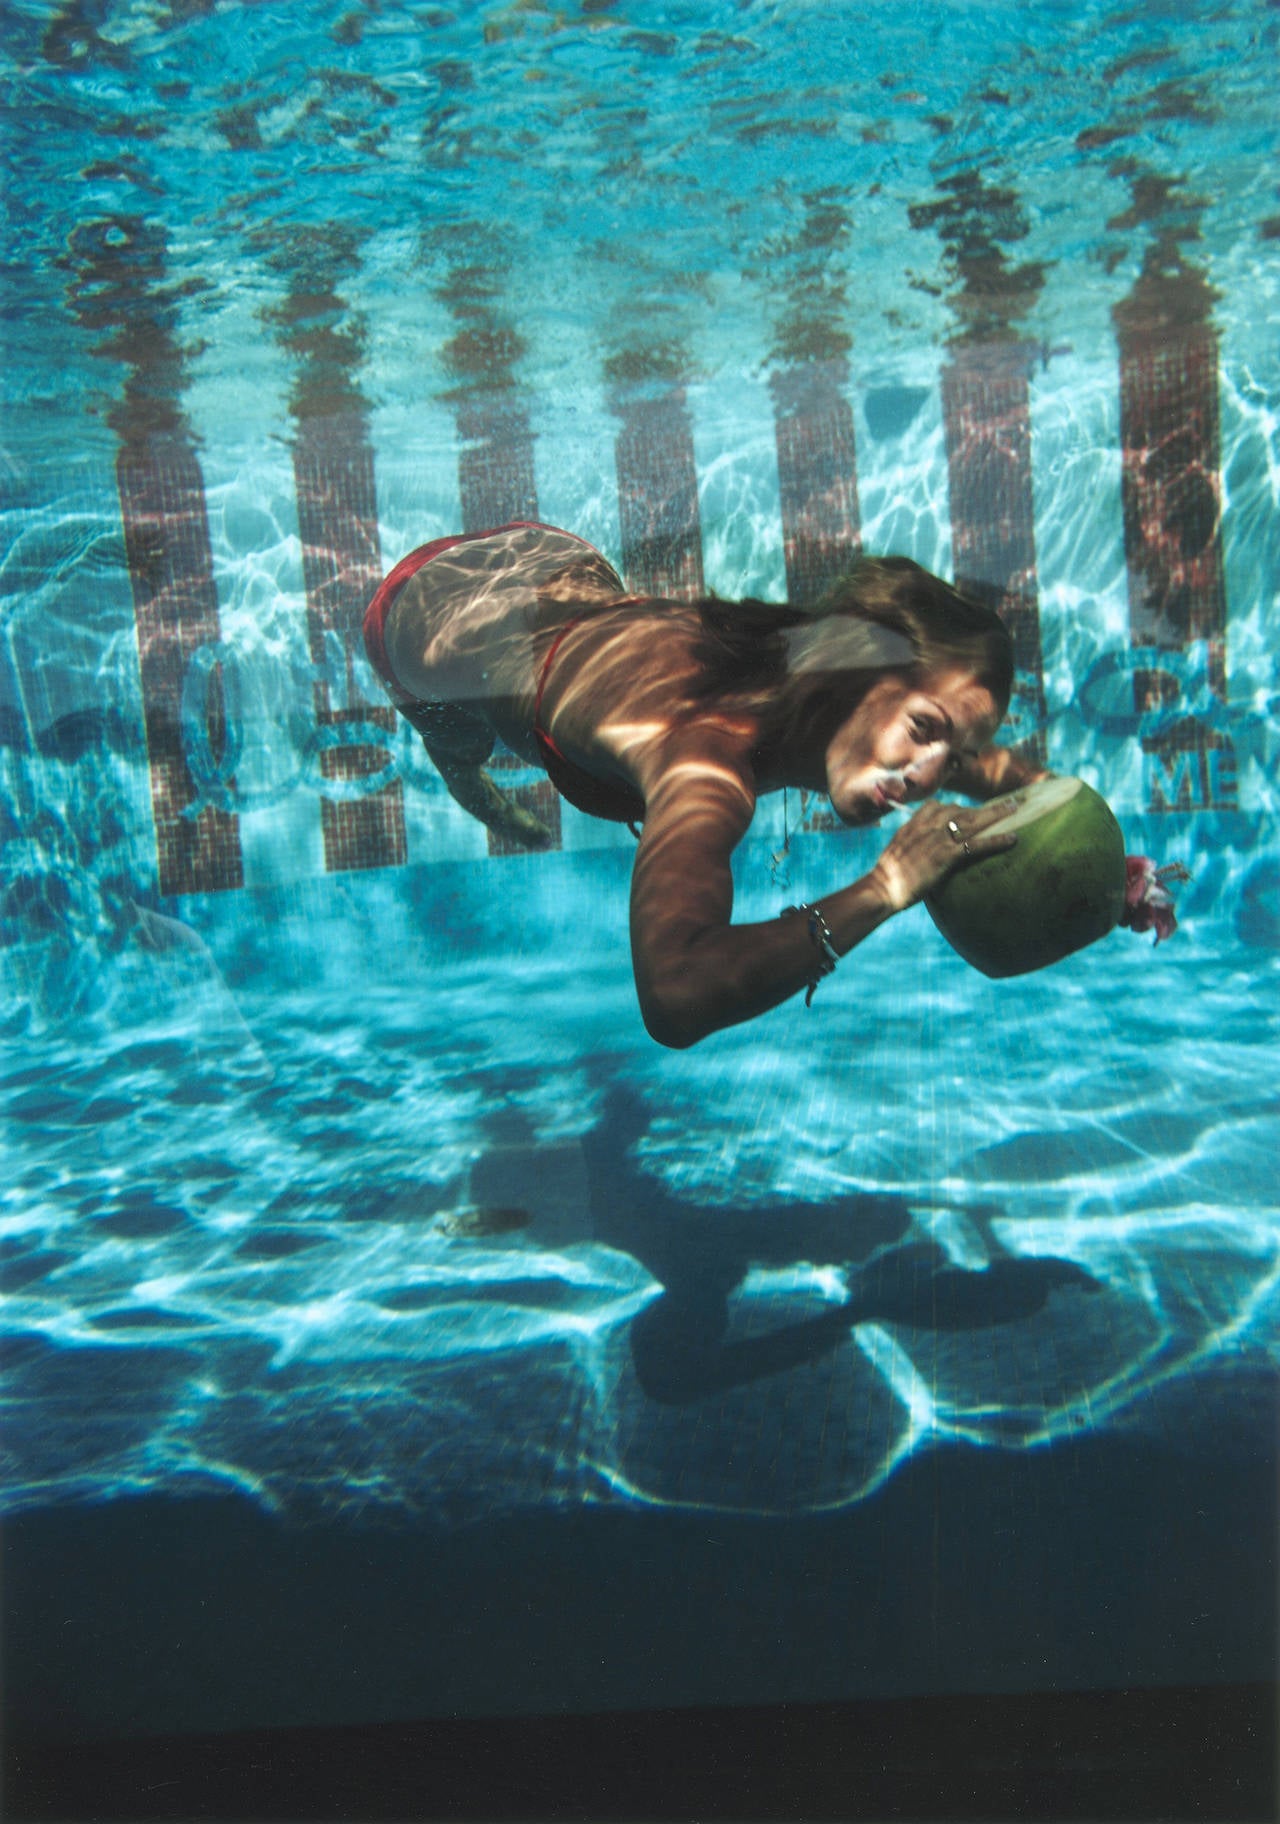 Une femme boit dans une noix de coco sous l'eau de la piscine de l'hôtel Las Brisas à Acapulco, Mexique, février 1972. 

Édition de 150 exemplaires estampillés et numérotés à la main, avec certificat d'authenticité de la succession Slim Aarons.